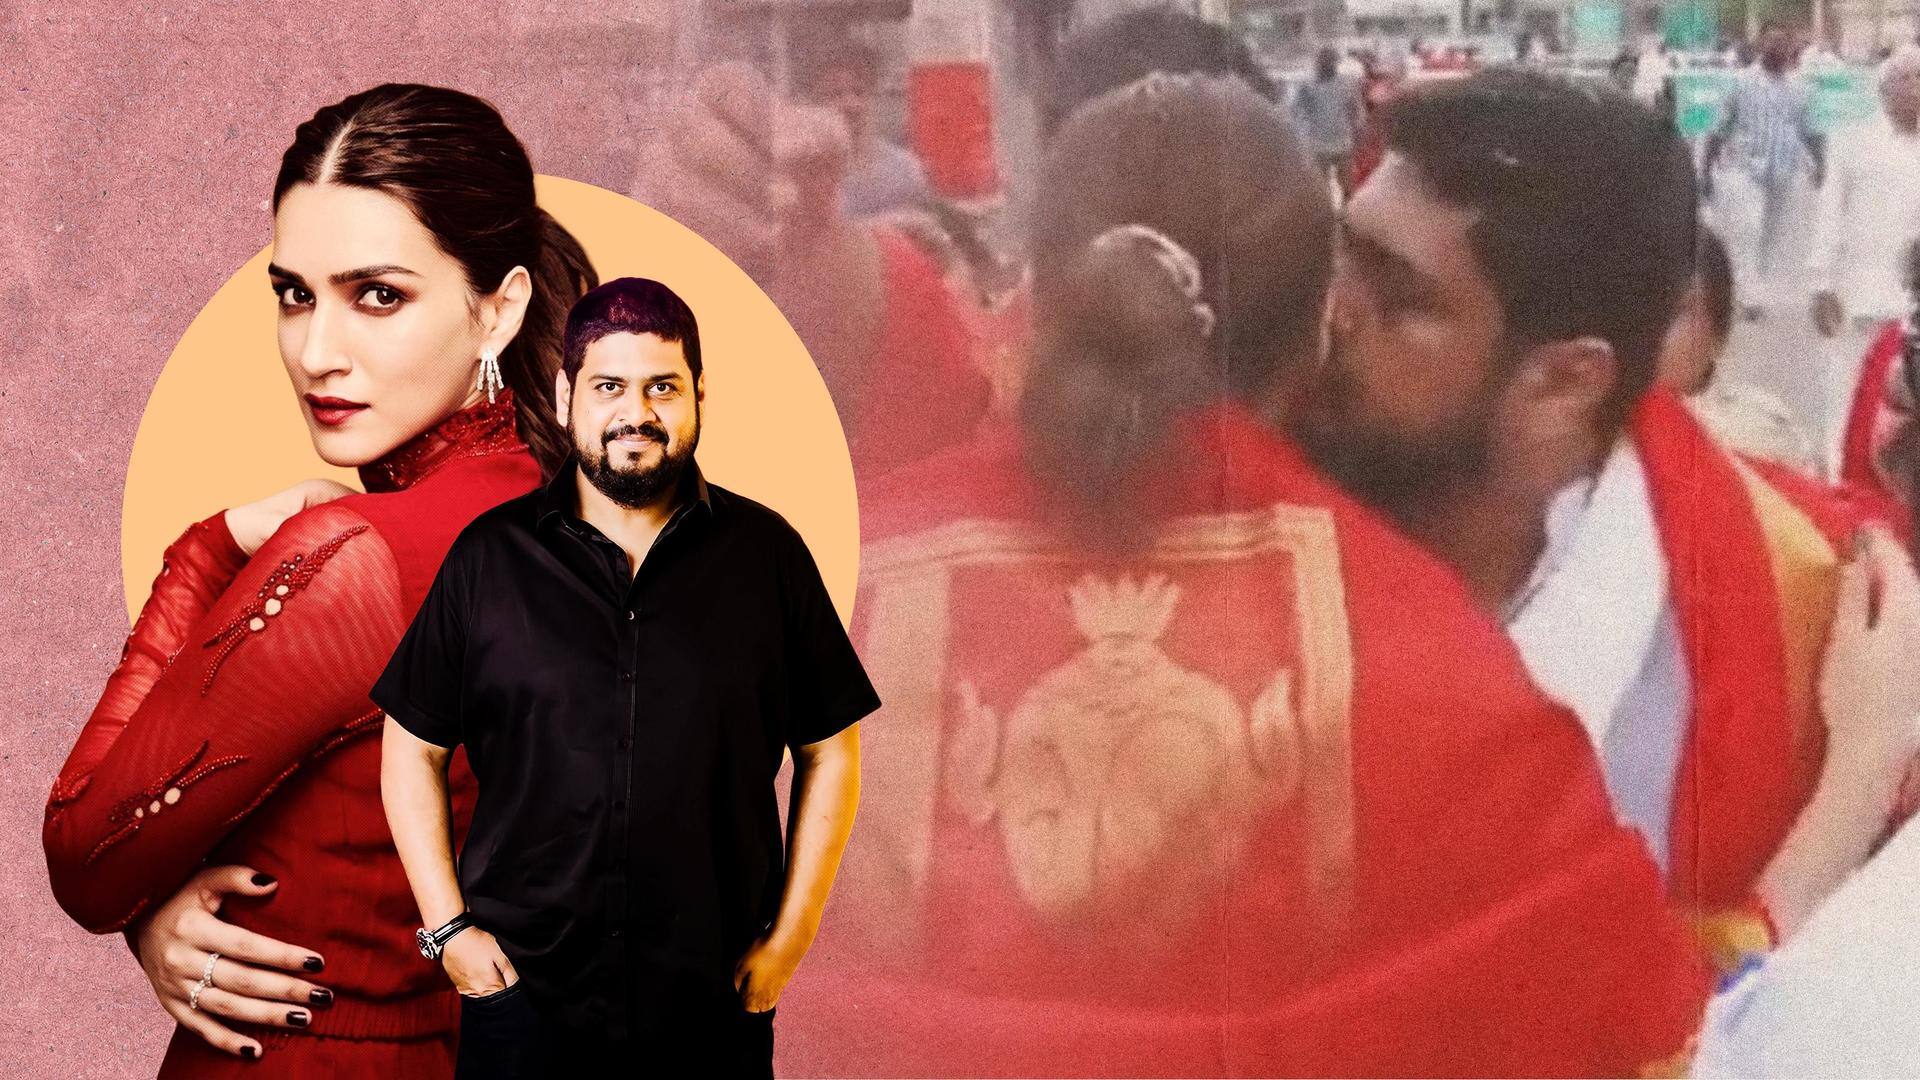 'Adipurush' director Om Raut under fire for 'kissing' Kriti Sanon